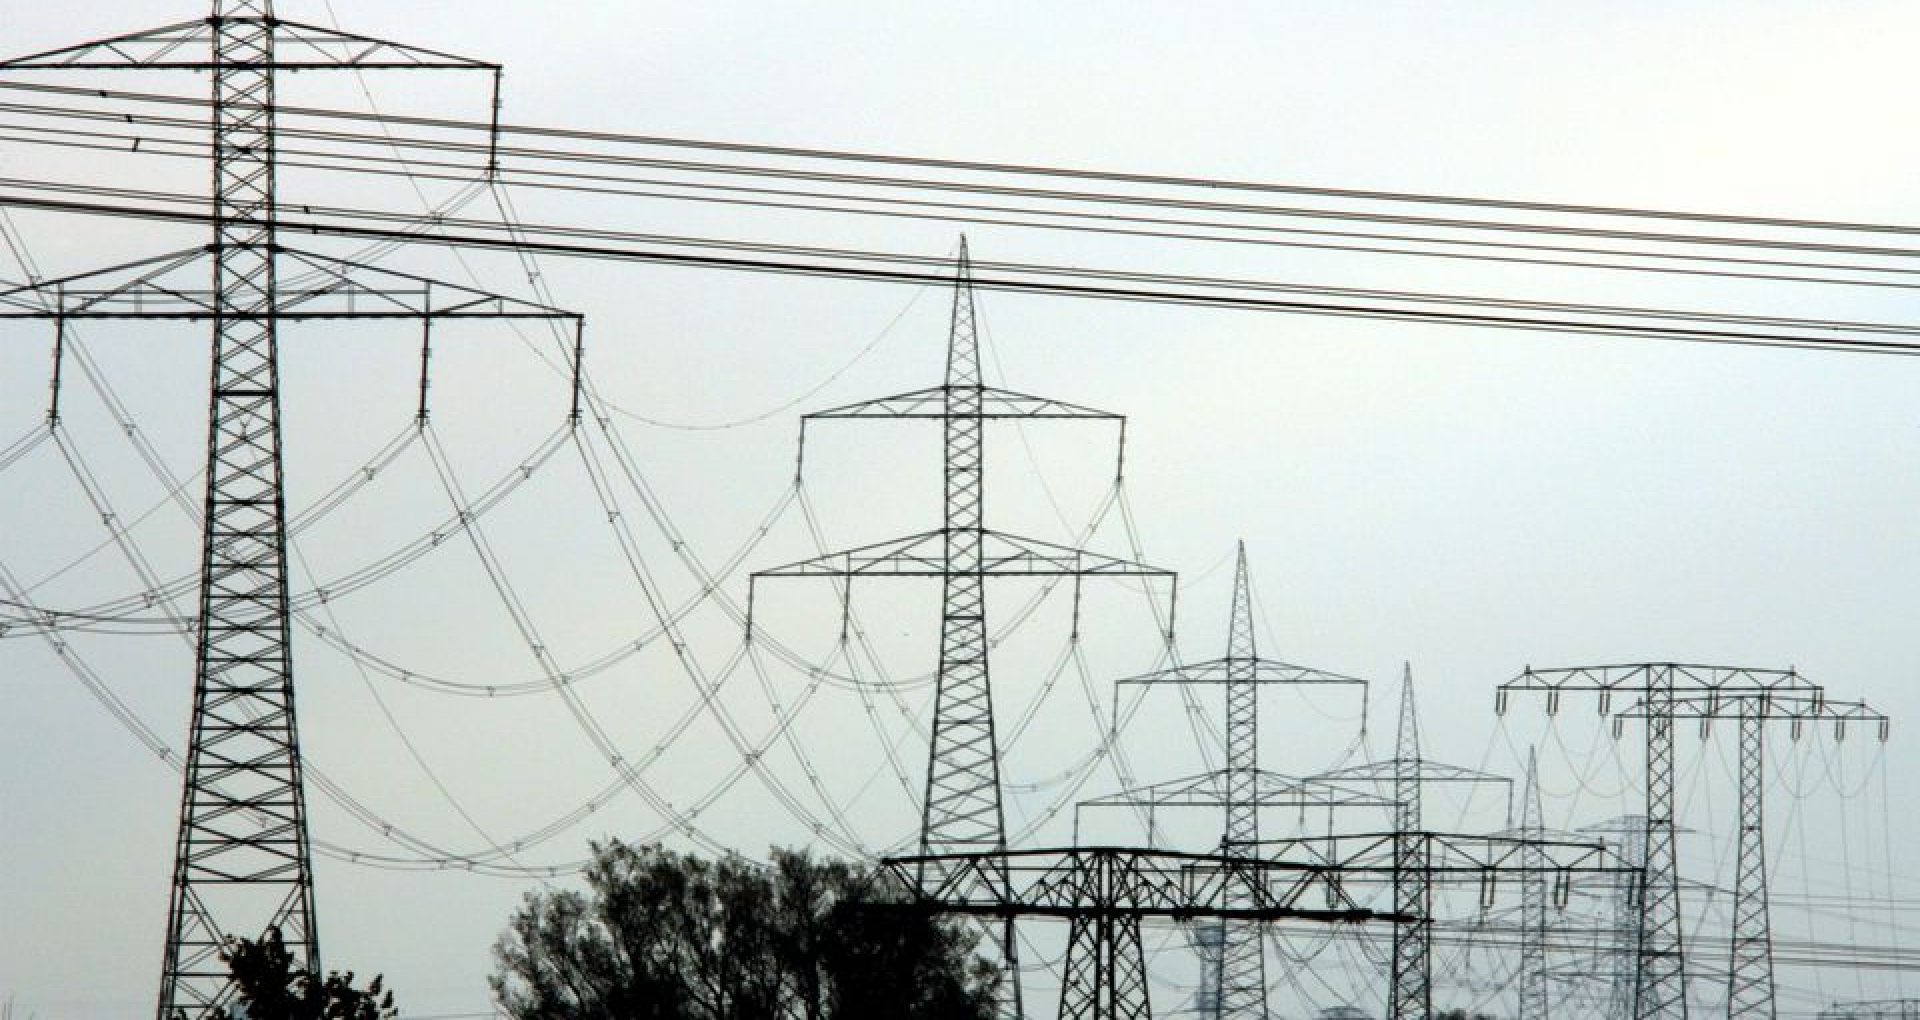 Germania, Danemarca, Irlanda şi alte şase state membre ale UE se opun reformării pieței europene de electricitate ca soluție la explozia prețurilor